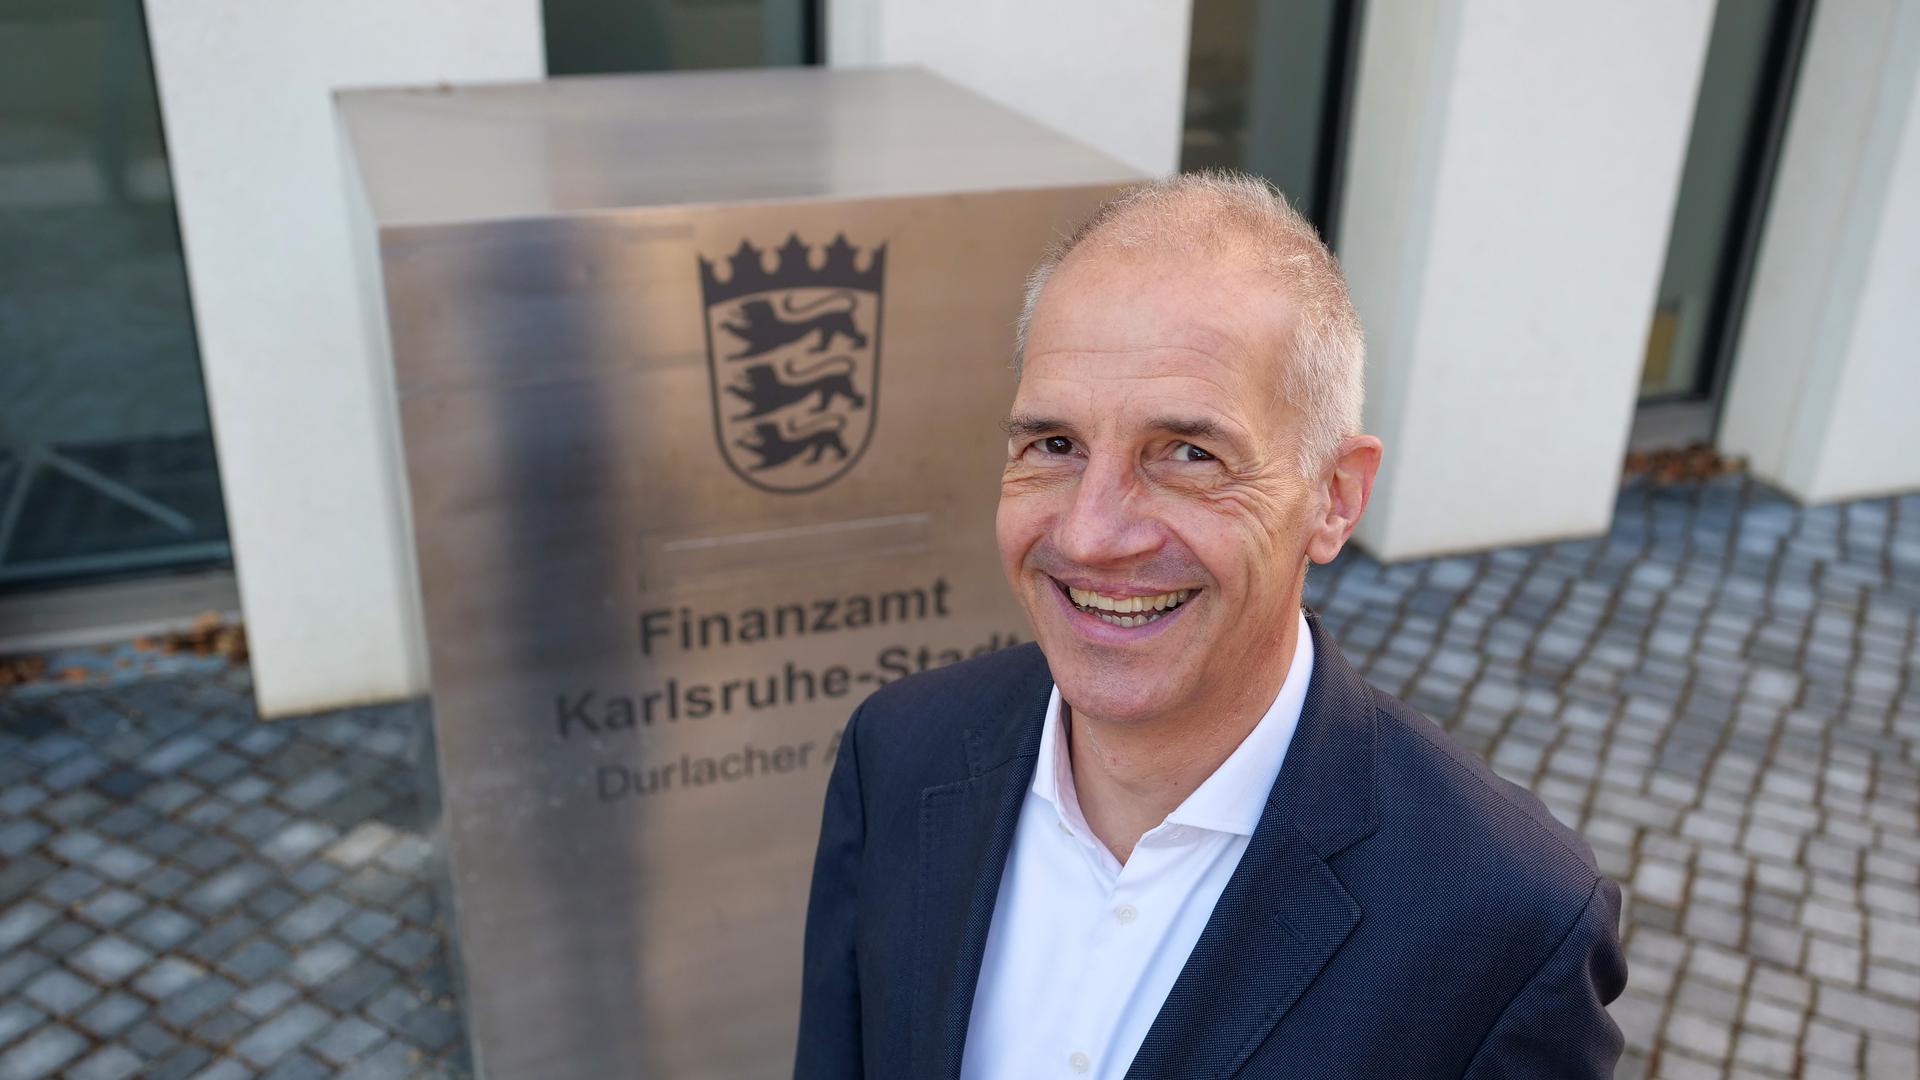 Hannes Grimm, Leiter des Finanzamts Karlsruhe-Stadt, am 17.12.2021 vor seiner Behörde im Neubau in der Durlacher Allee 29